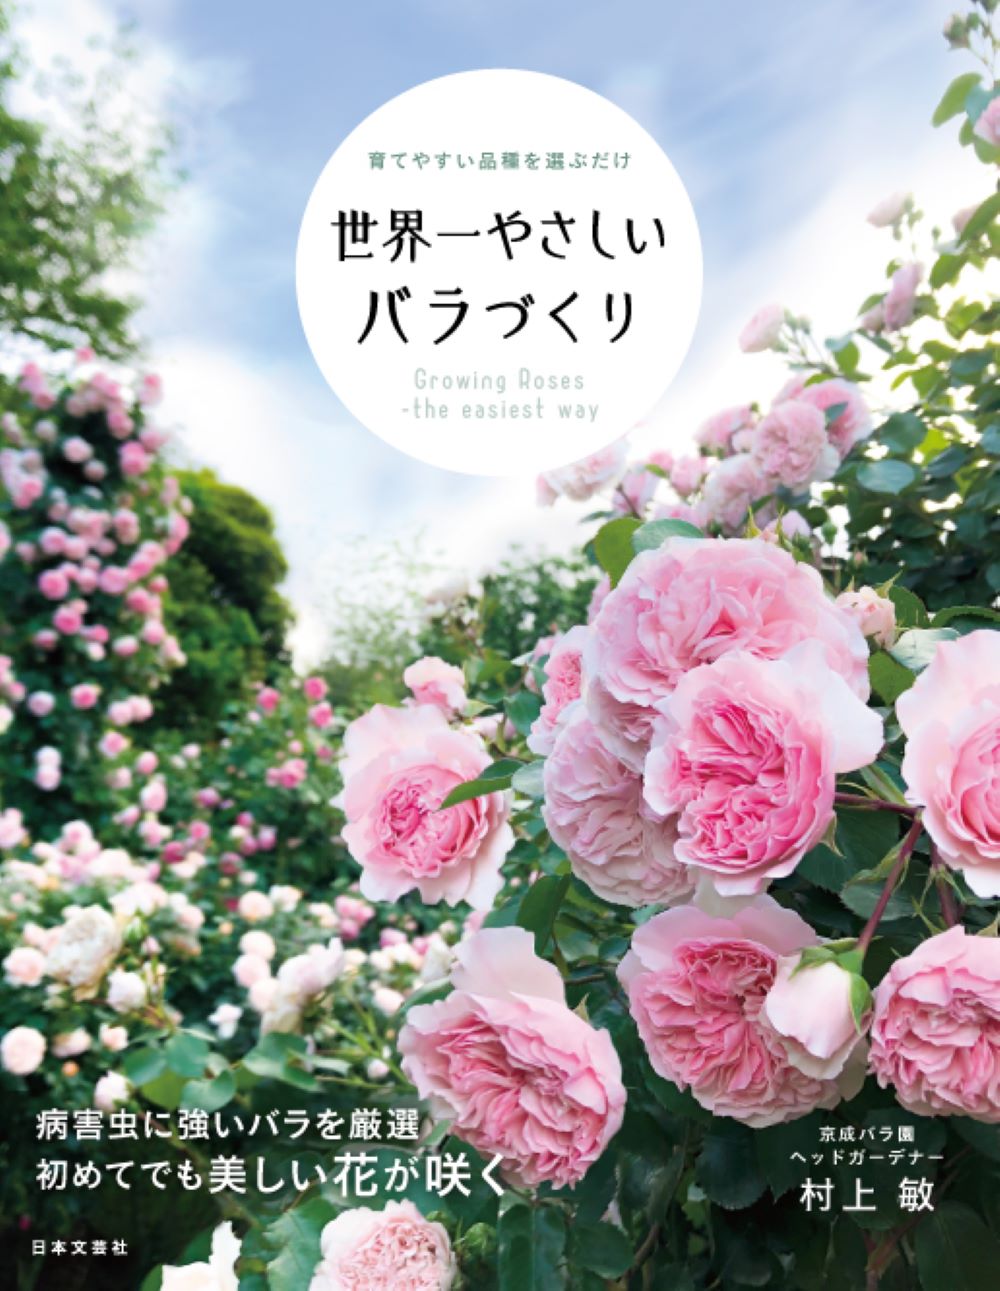 京成バラ園ヘッドガーデナー村上敏さんが解説 初心者でも手間がかからず 必ず美しいバラを咲かせる育てやすい品種と育て方 世界一やさしいバラ づくり 5 16発売 株式会社日本文芸社のプレスリリース